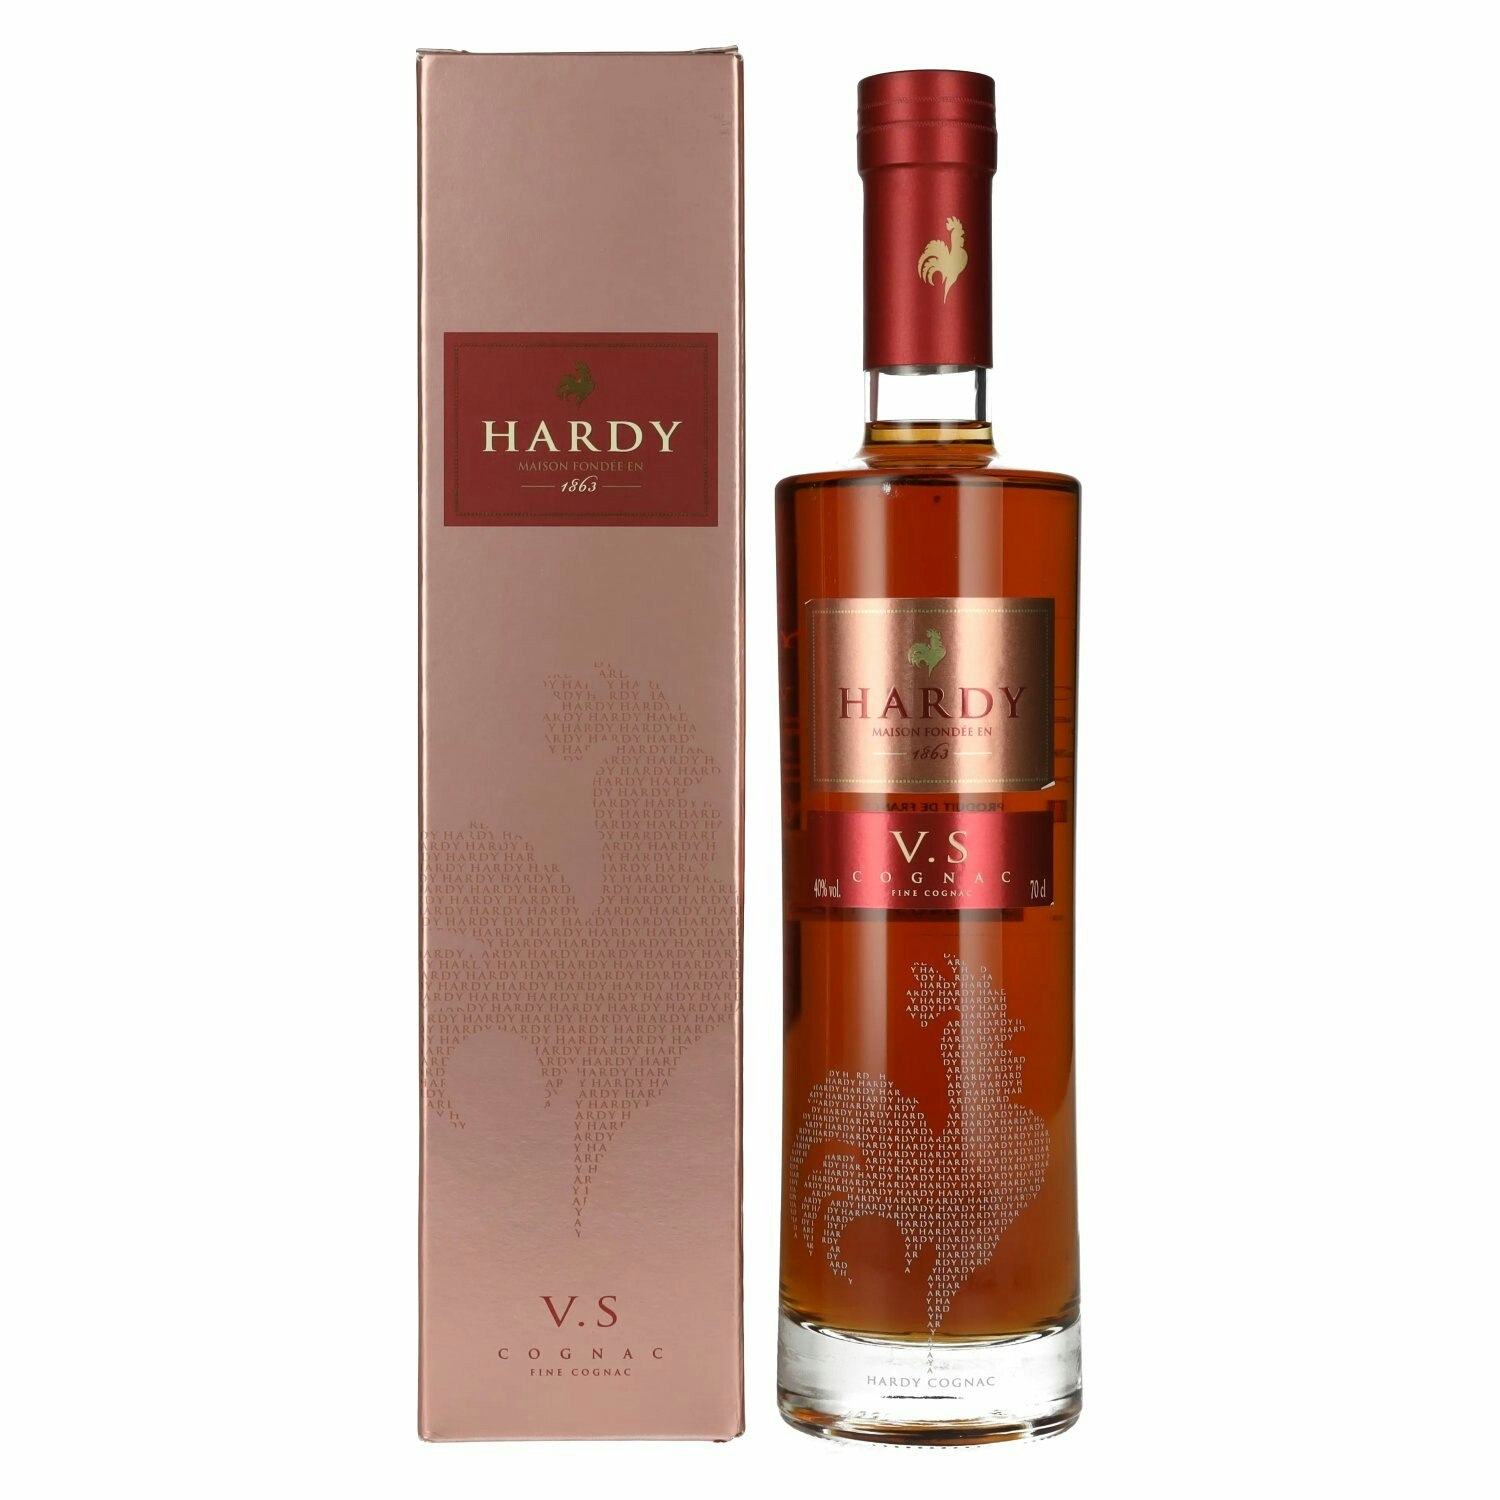 Hardy V.S Fine Cognac 40% Vol. 0,7l in Giftbox